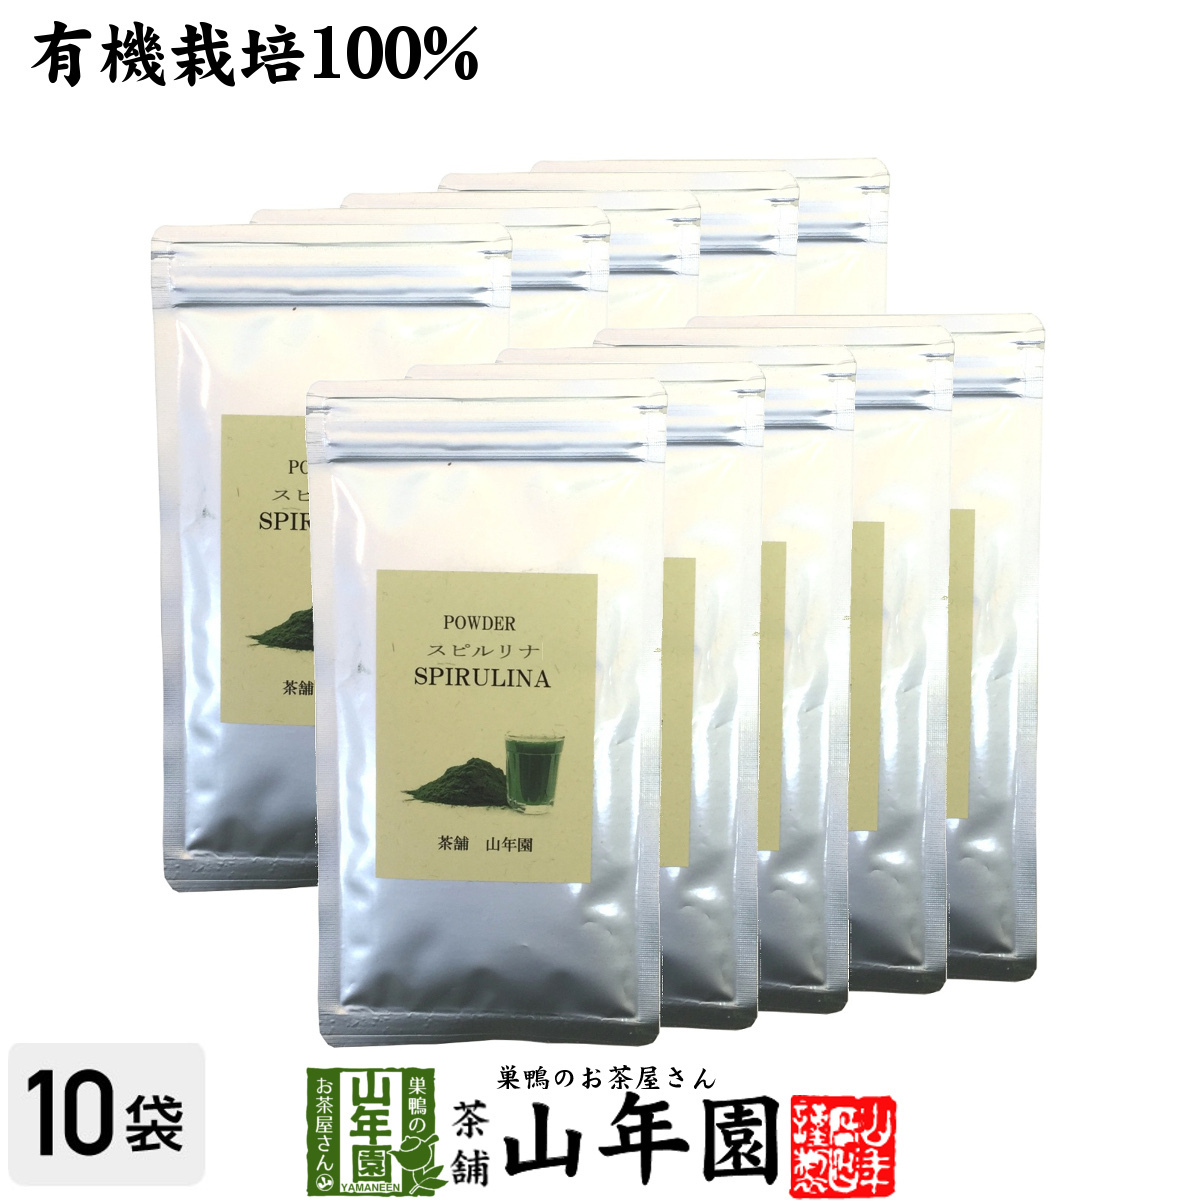 健康食品 無農薬 スピルリナ パウダー 100% 60g×10袋セット 粉末 スーパーフード ダイエット 海藻 送料無料